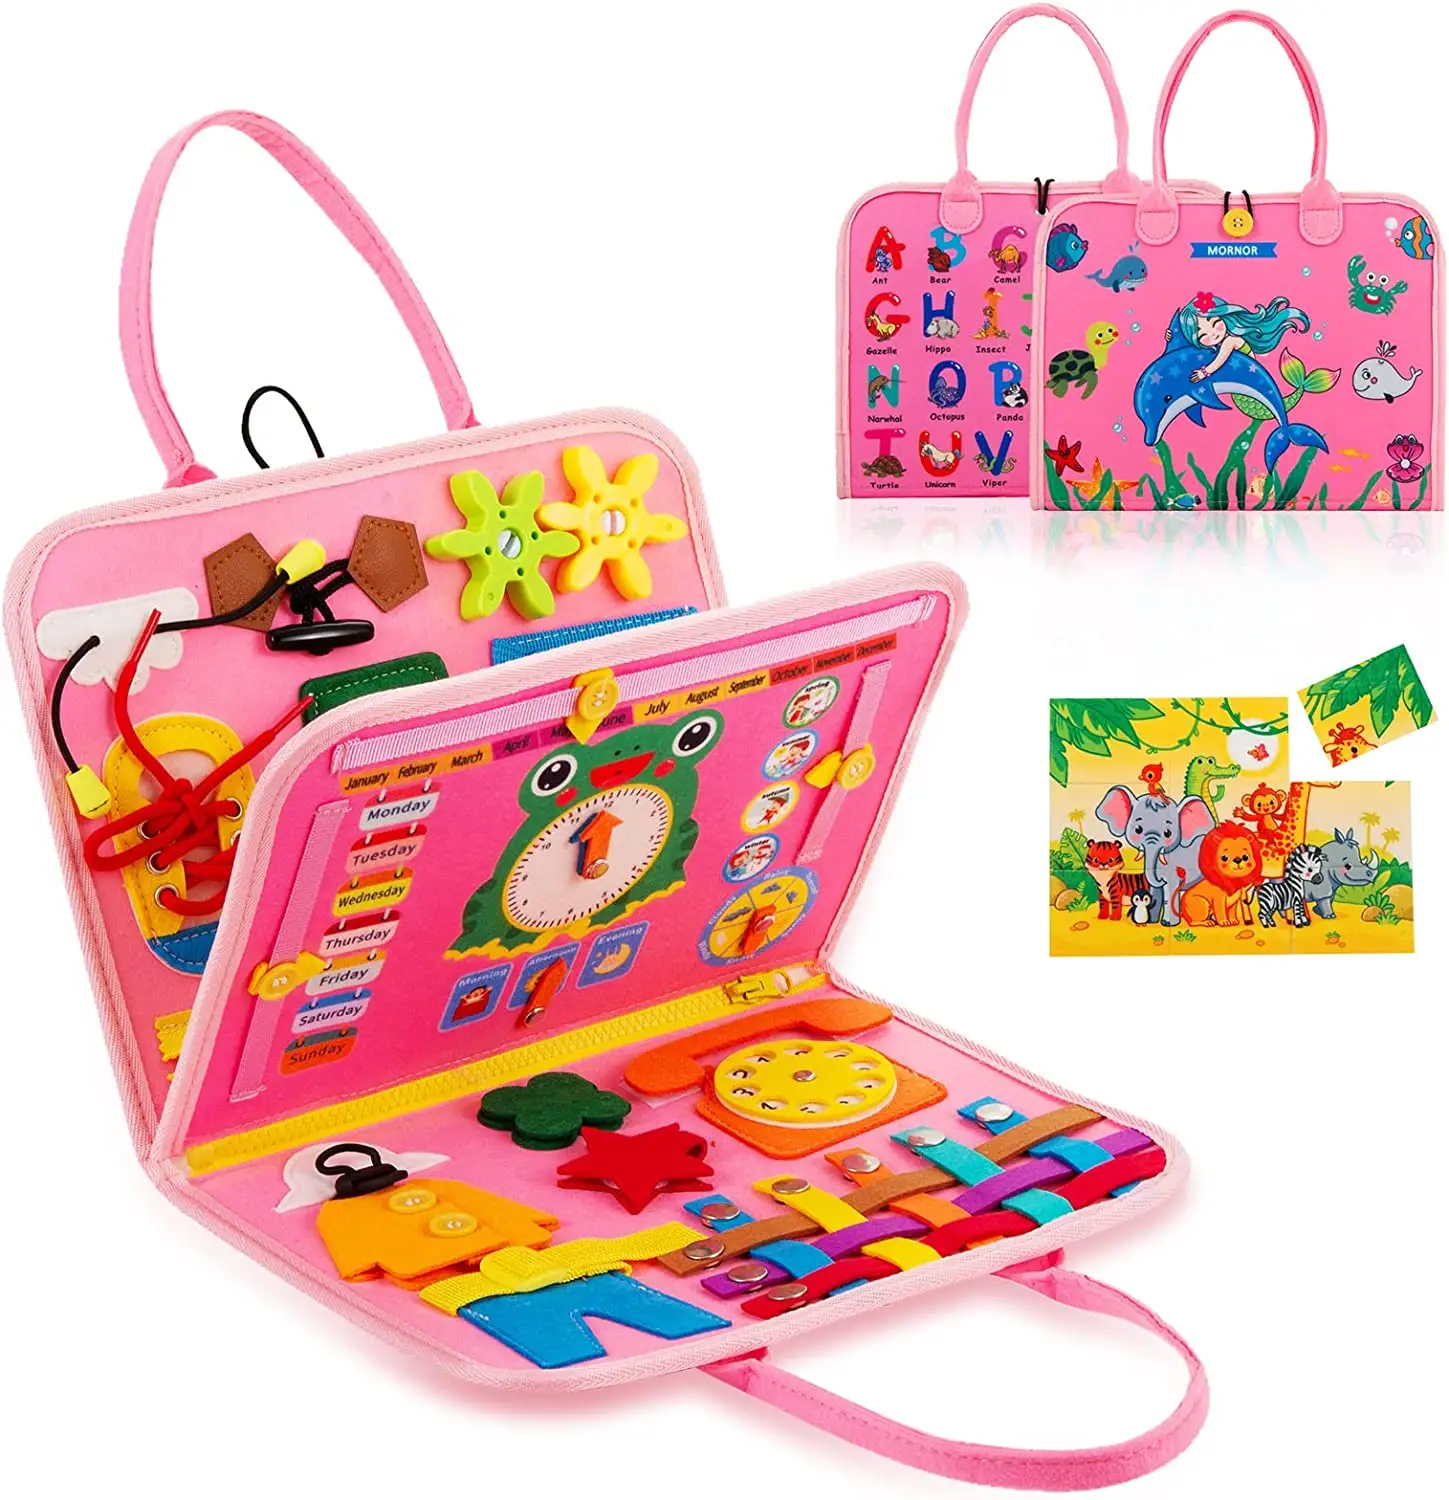 2023 Großhandel Busy Board für Kleinkinder 1 2 3 4 Jahre alt, Sensory Activity Board für Lernspiel zeug, Montessori Toy Busy Board